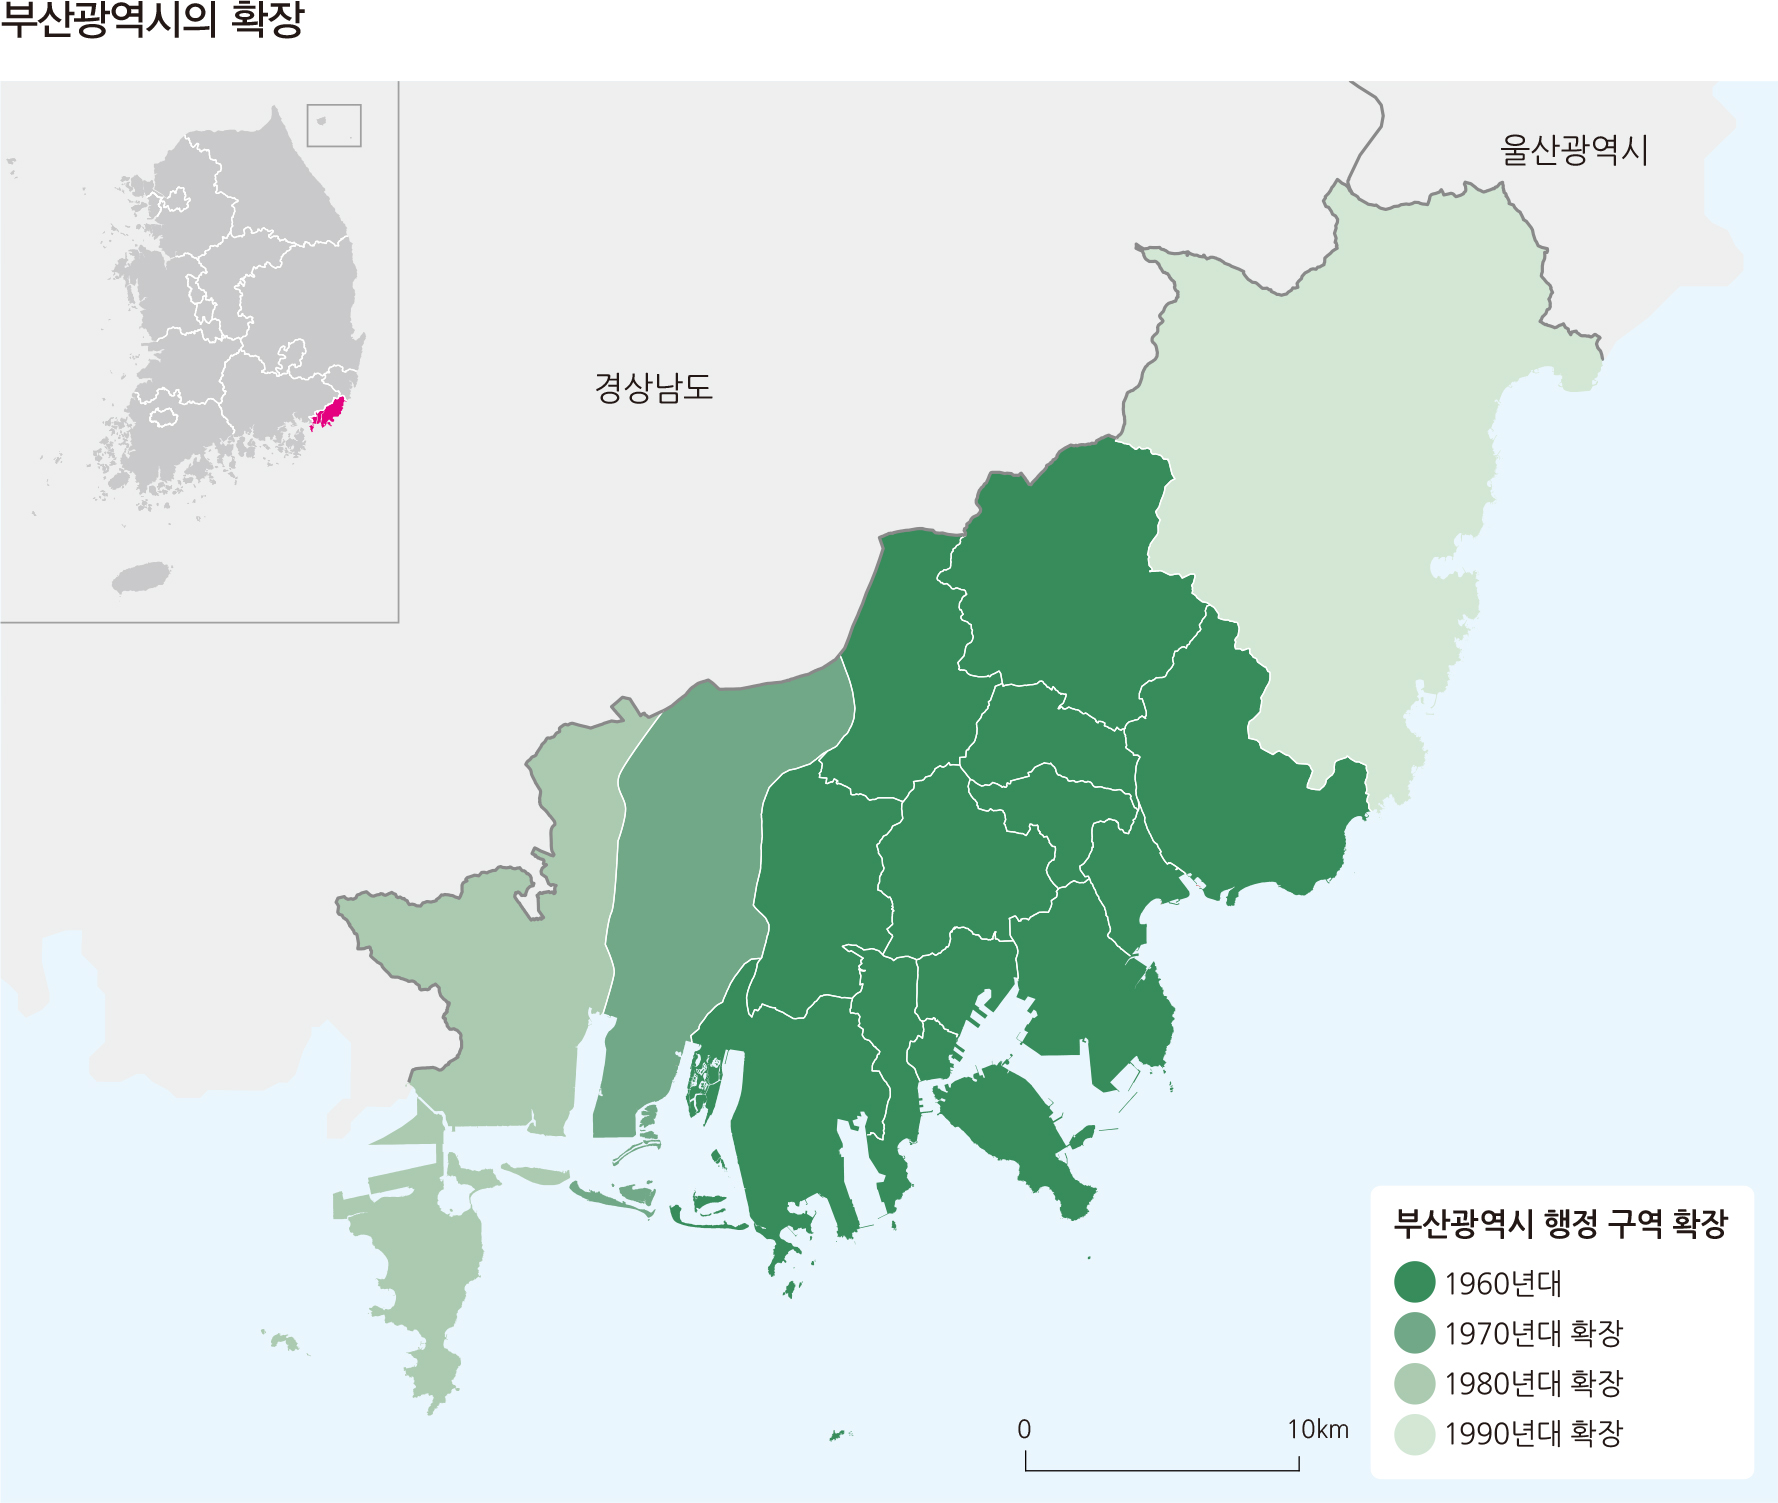 부산광역시의 확장